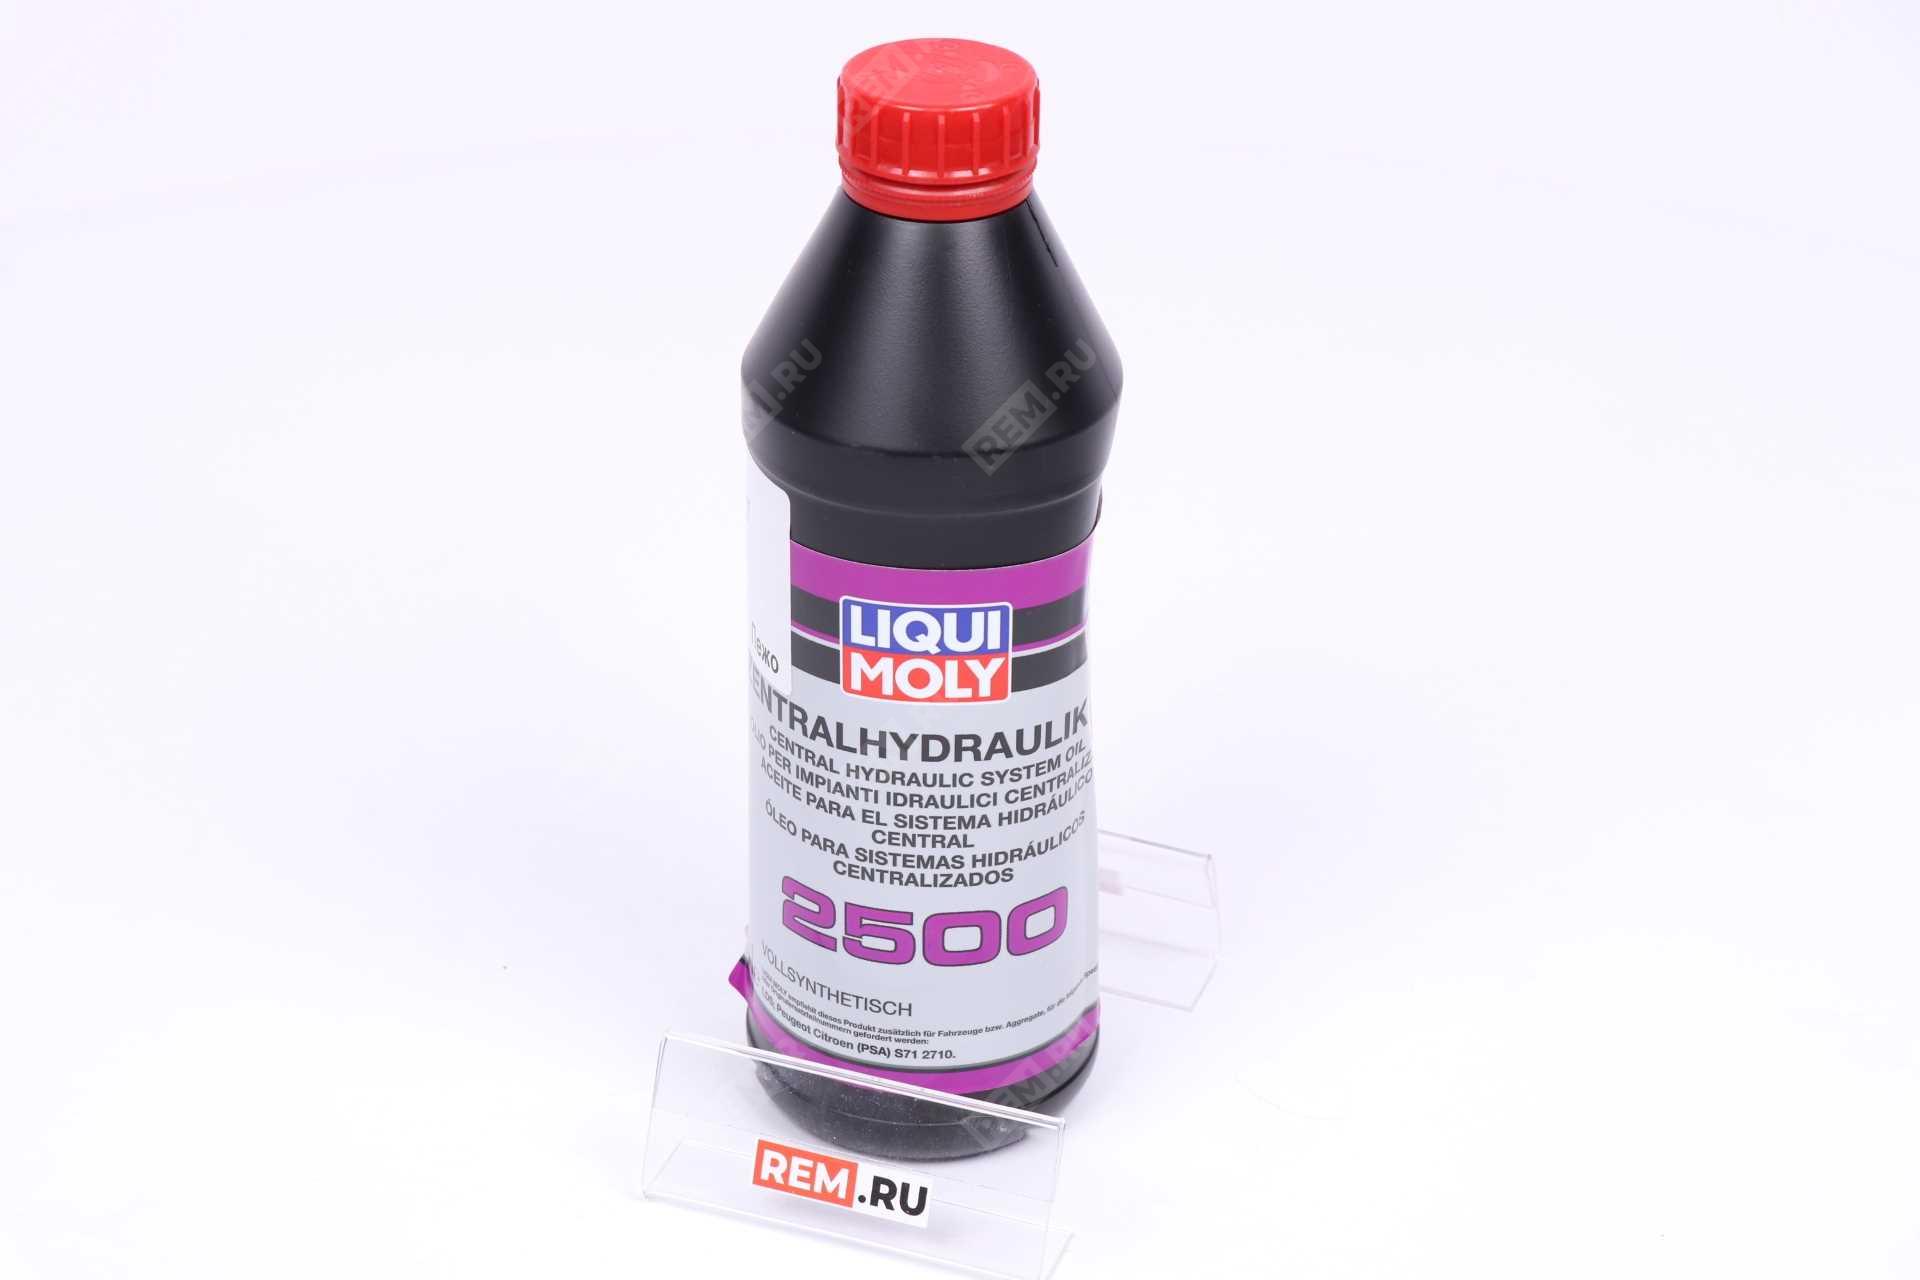  DLM0003667  жидкость гидравлическая liqui moly  zentralhydraulik 2500, 1л (фото 1)